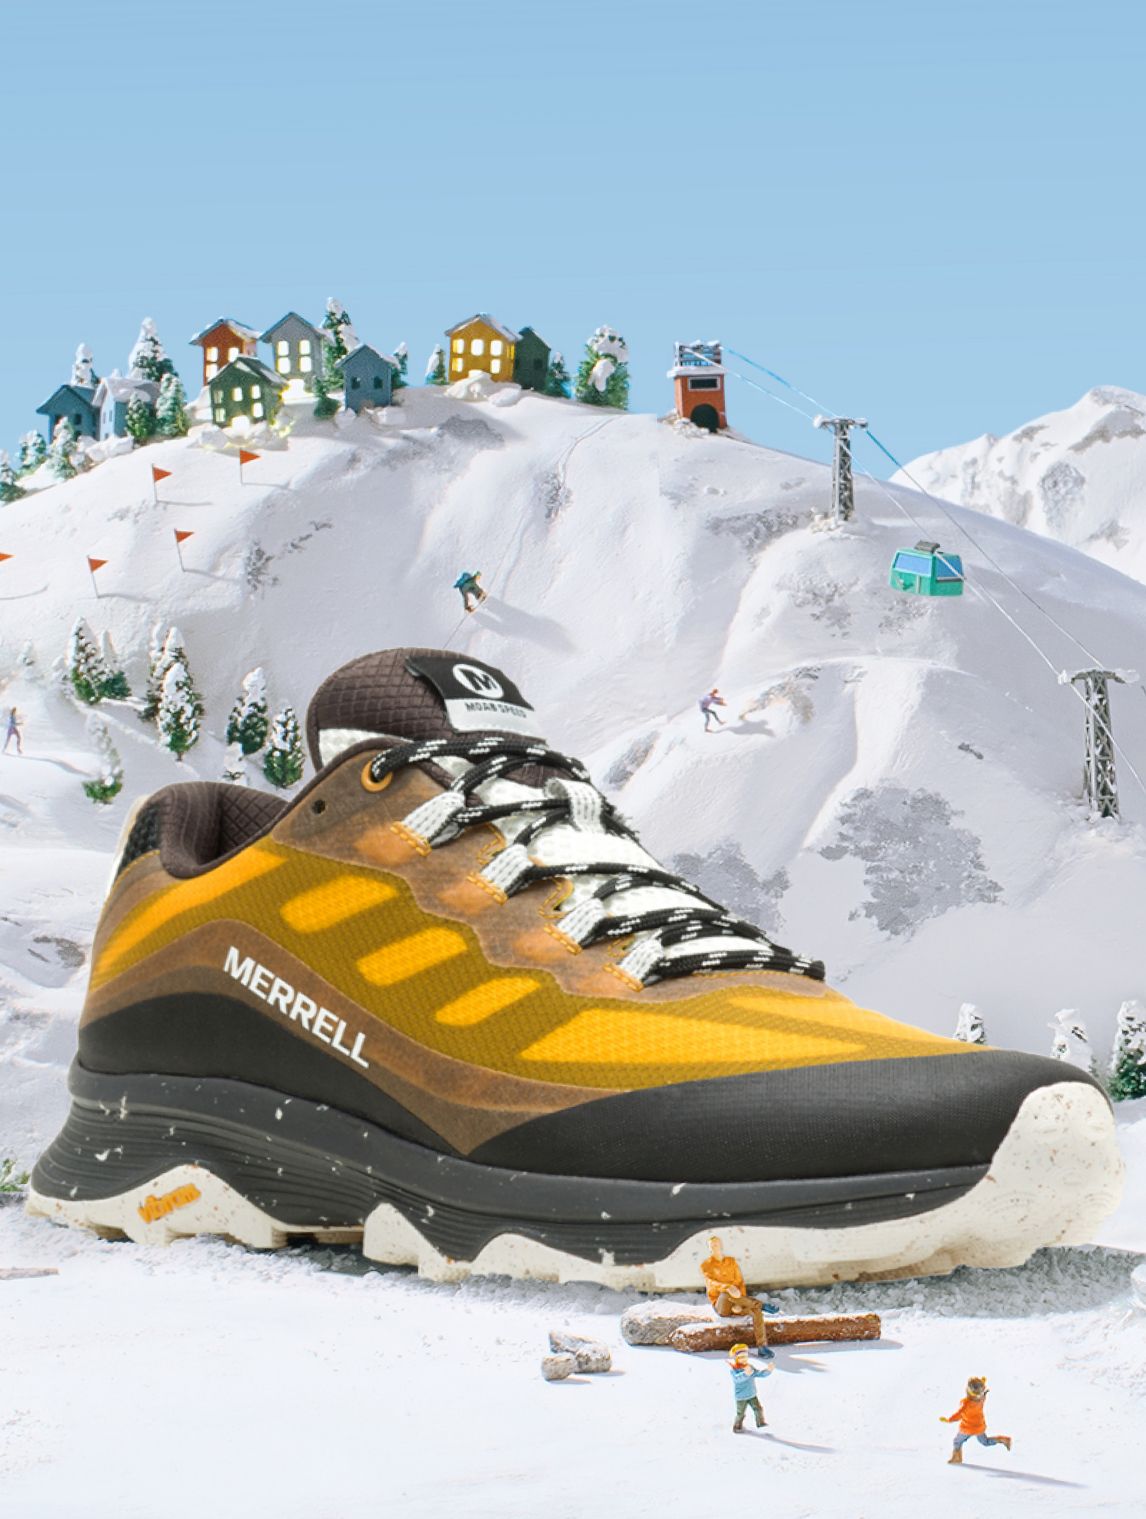 Une chaussure Merrell jaune et noire sur une montagne enneigée.